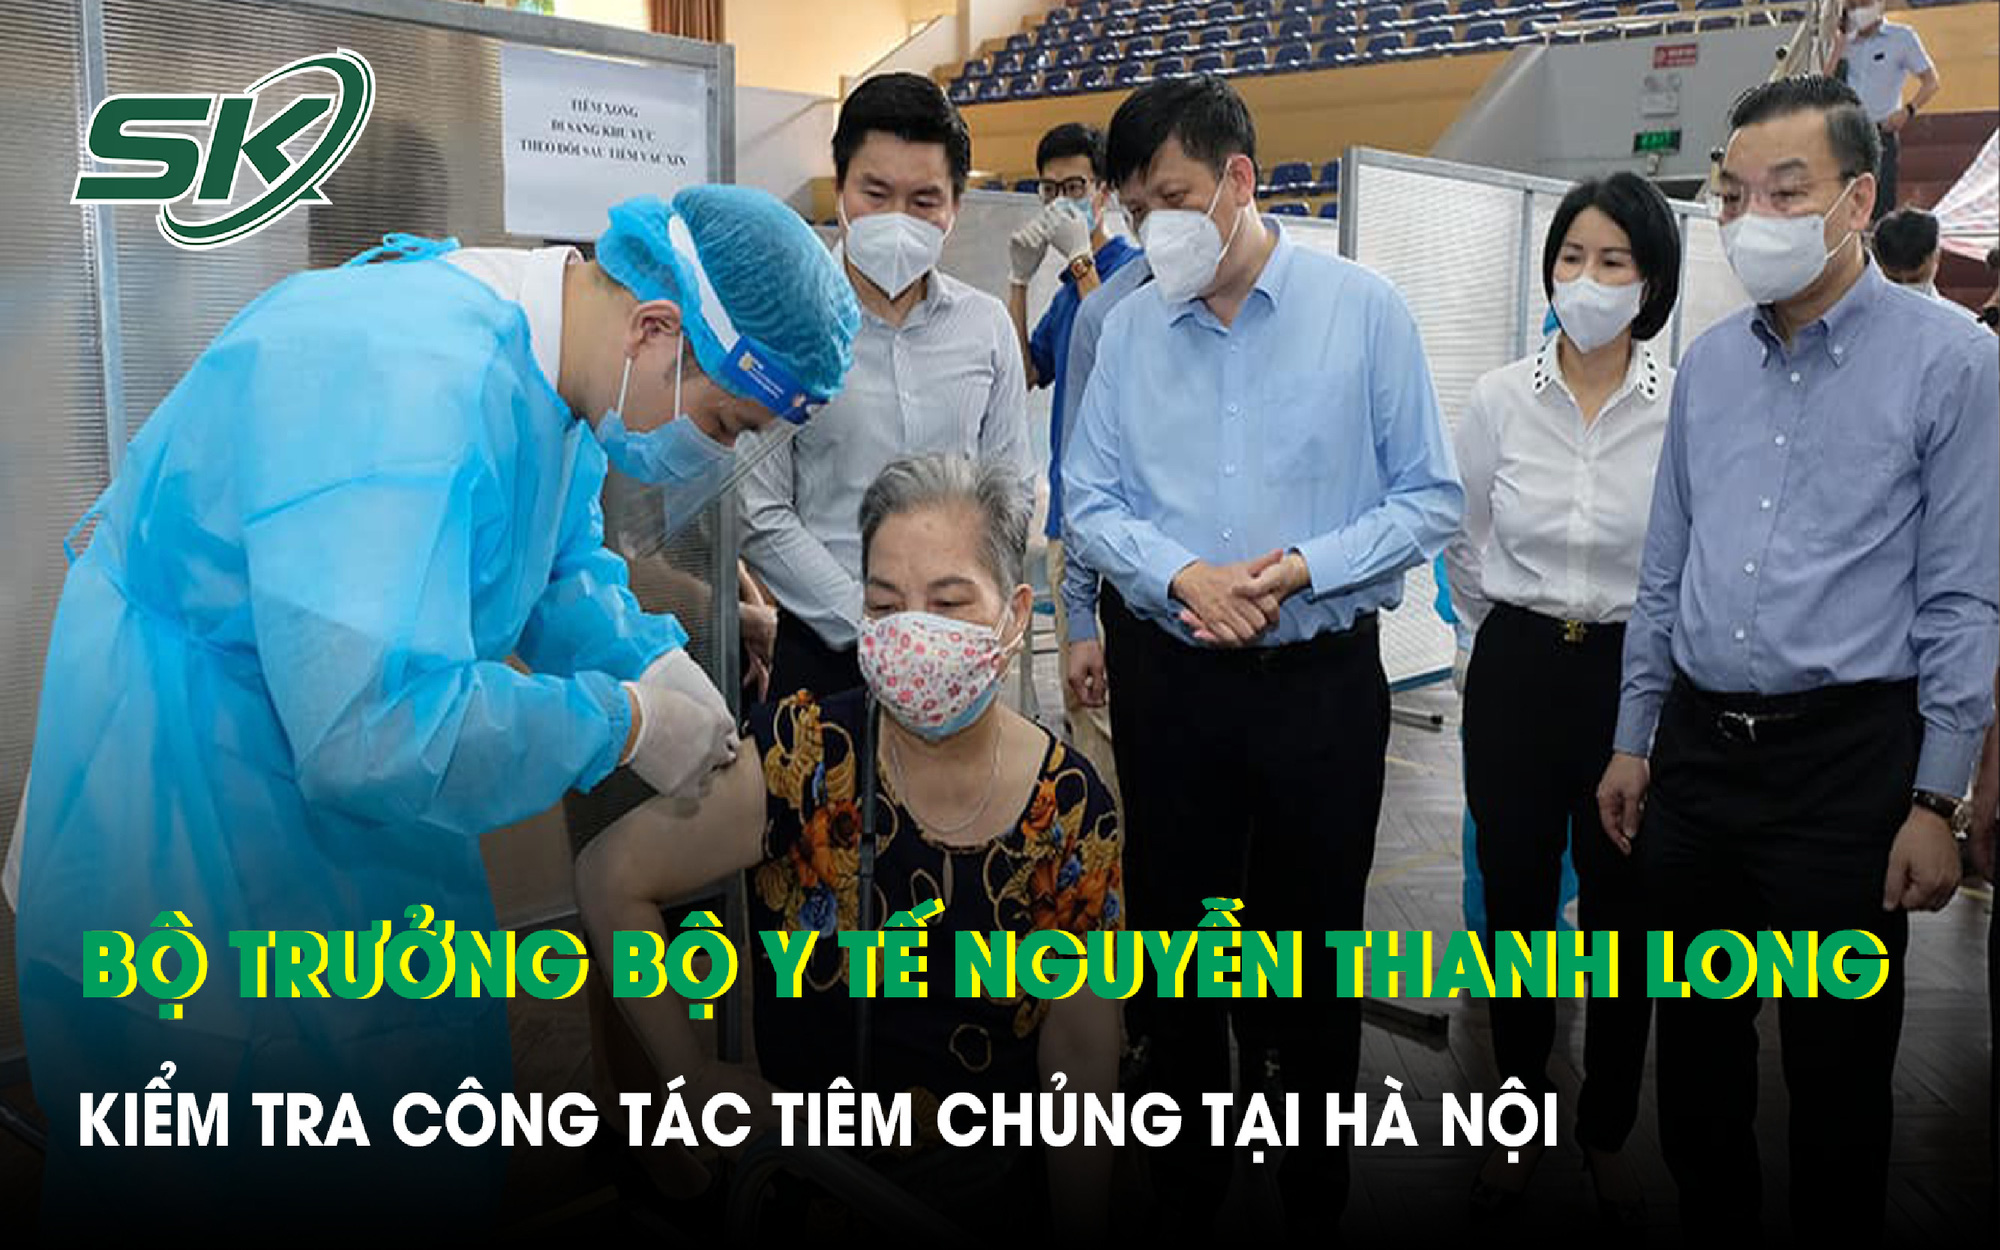 VIDEO: Bộ trưởng Bộ Y tế Nguyễn Thanh Long kiểm tra công tác tiêm chủng tại Hà Nội